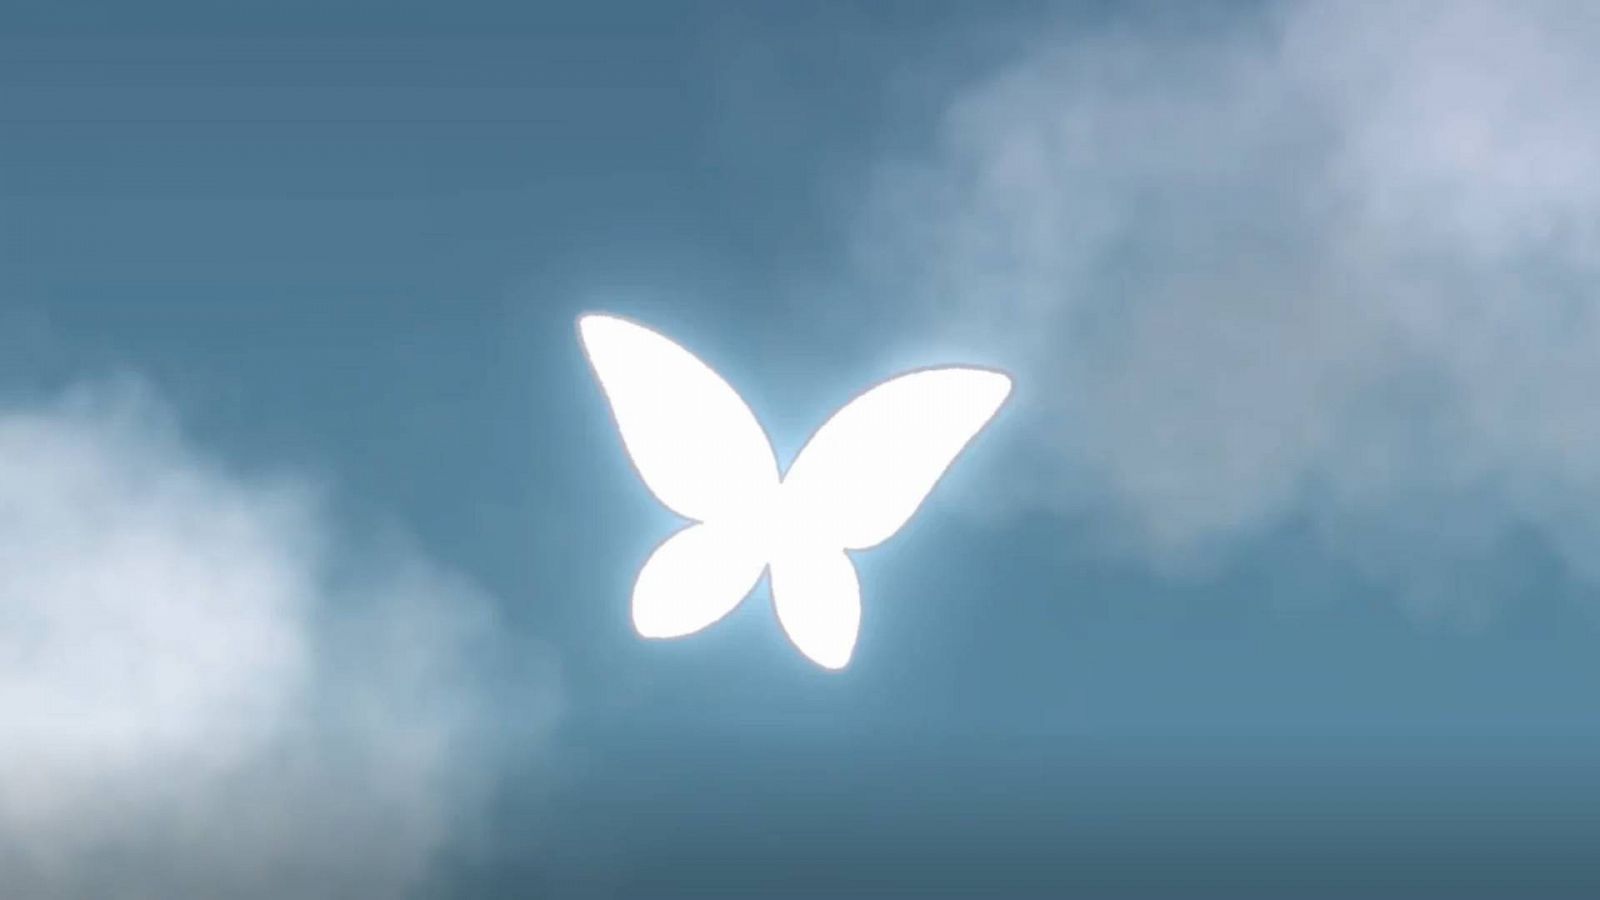 XIII Concurso de Cortos RNE - White butterflies - GANADOR Y PREMIO DEL PÚBLICO - Ver ahora